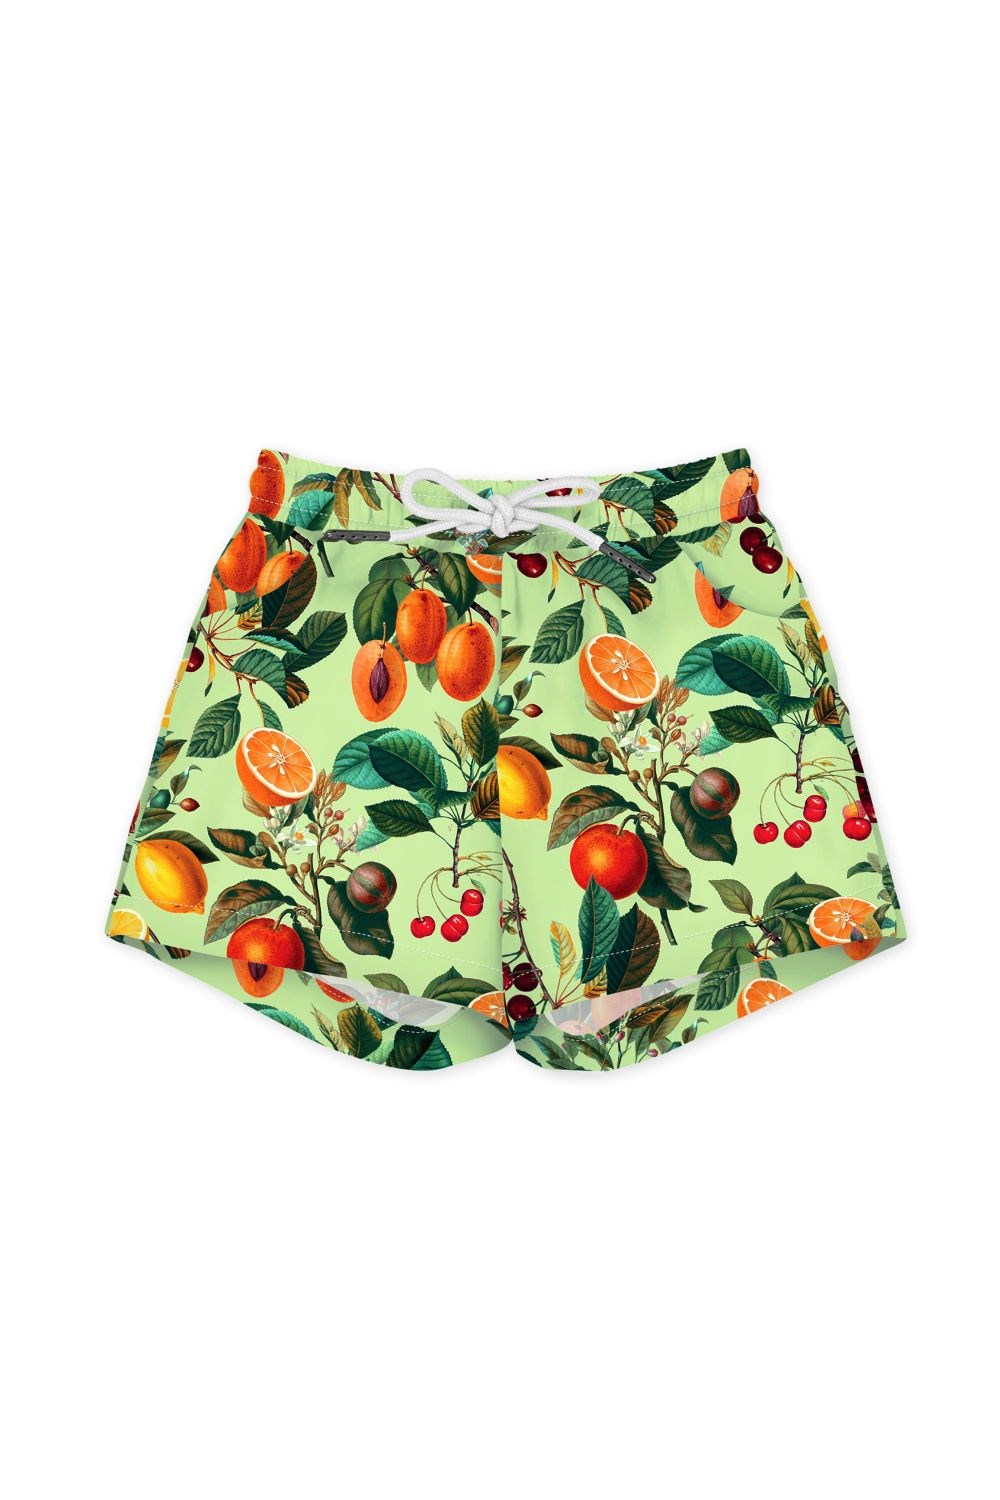 Clockwork Orange Kids Swim Shorts -